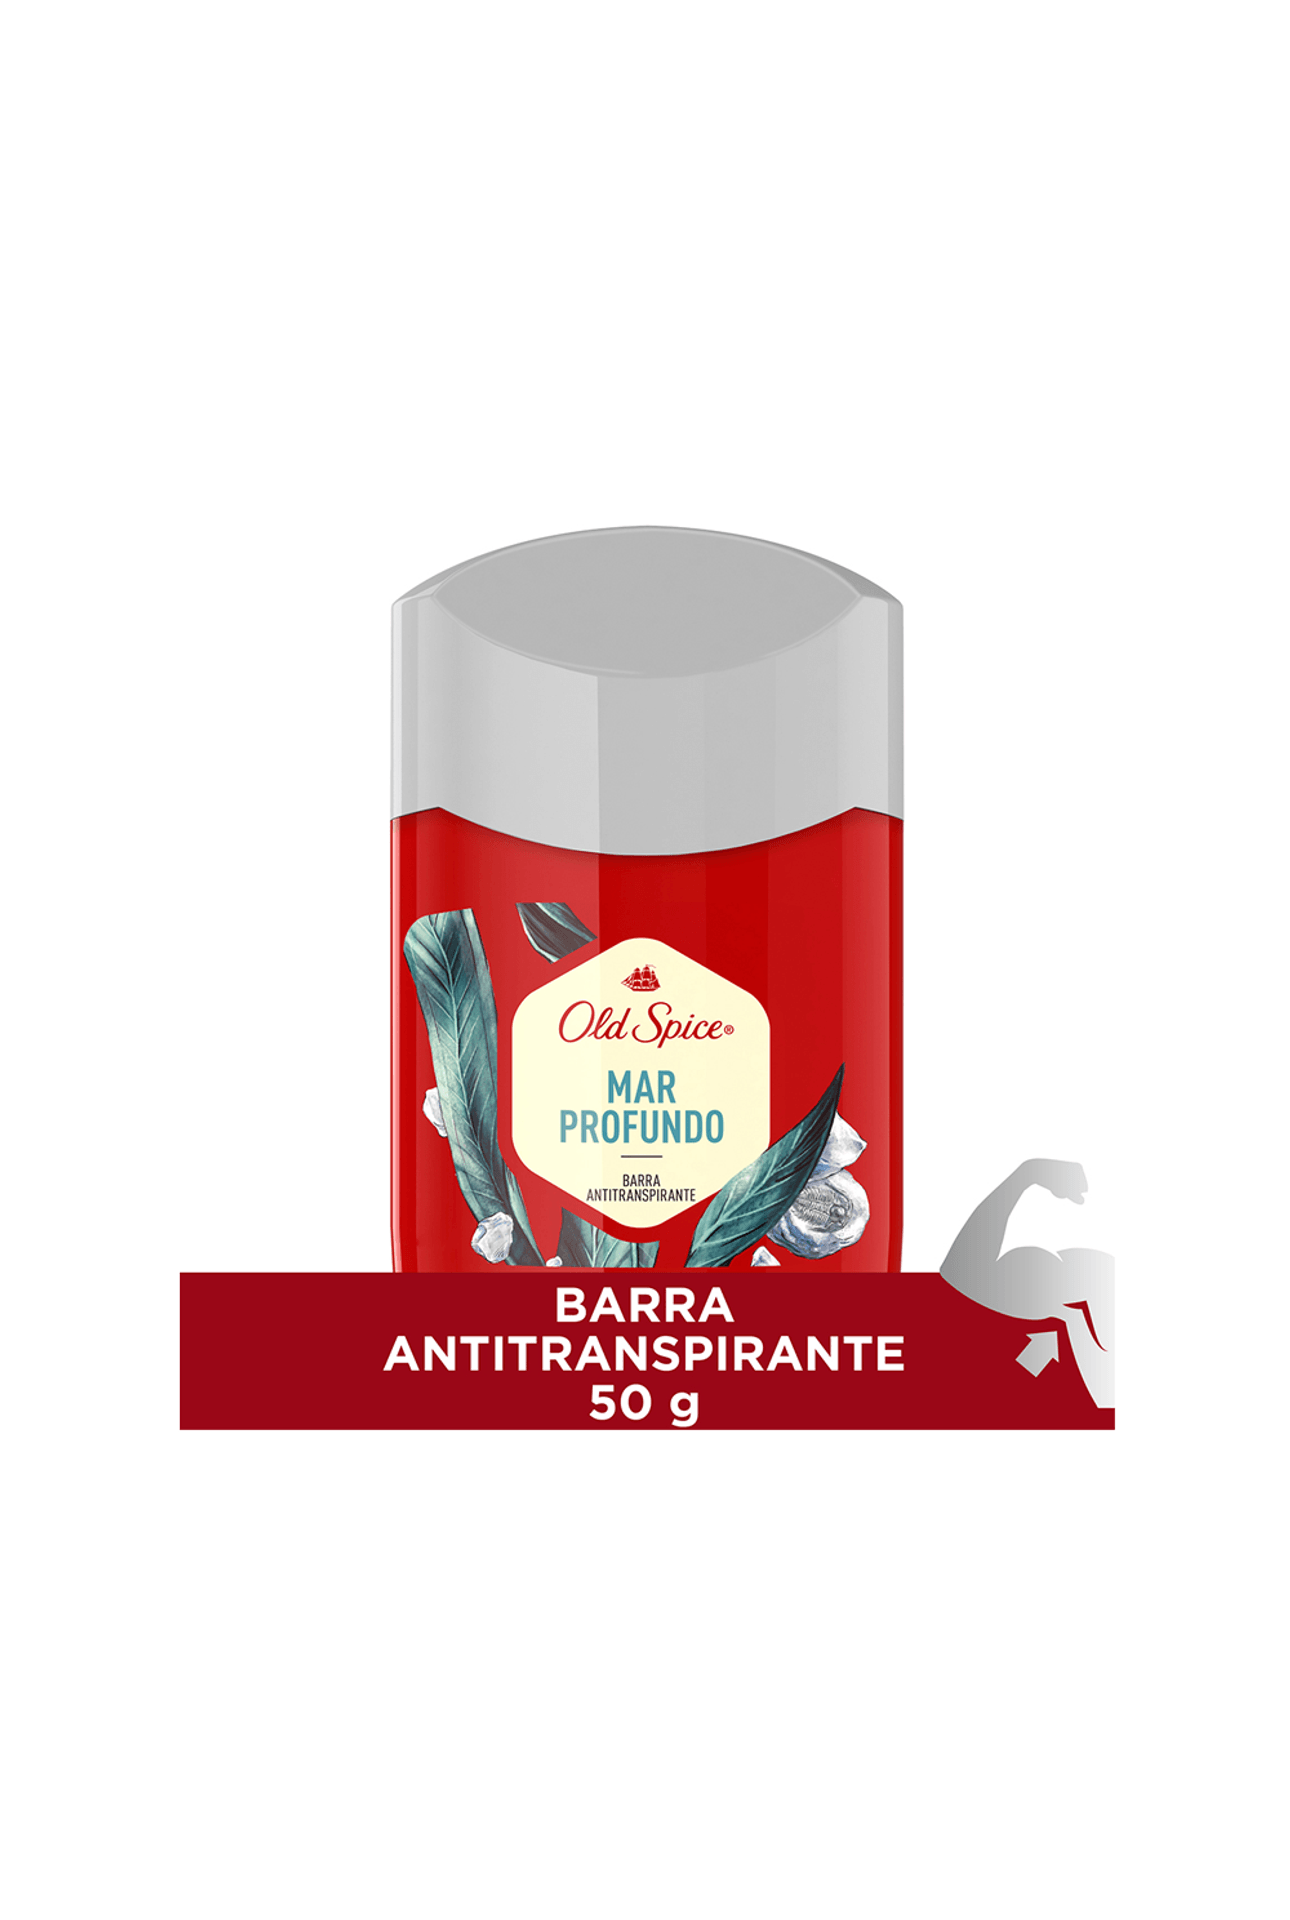 2120156_Old-Spice-Antitranspirante-en-Barra-Mar-Profundo-x-50-gr_img1